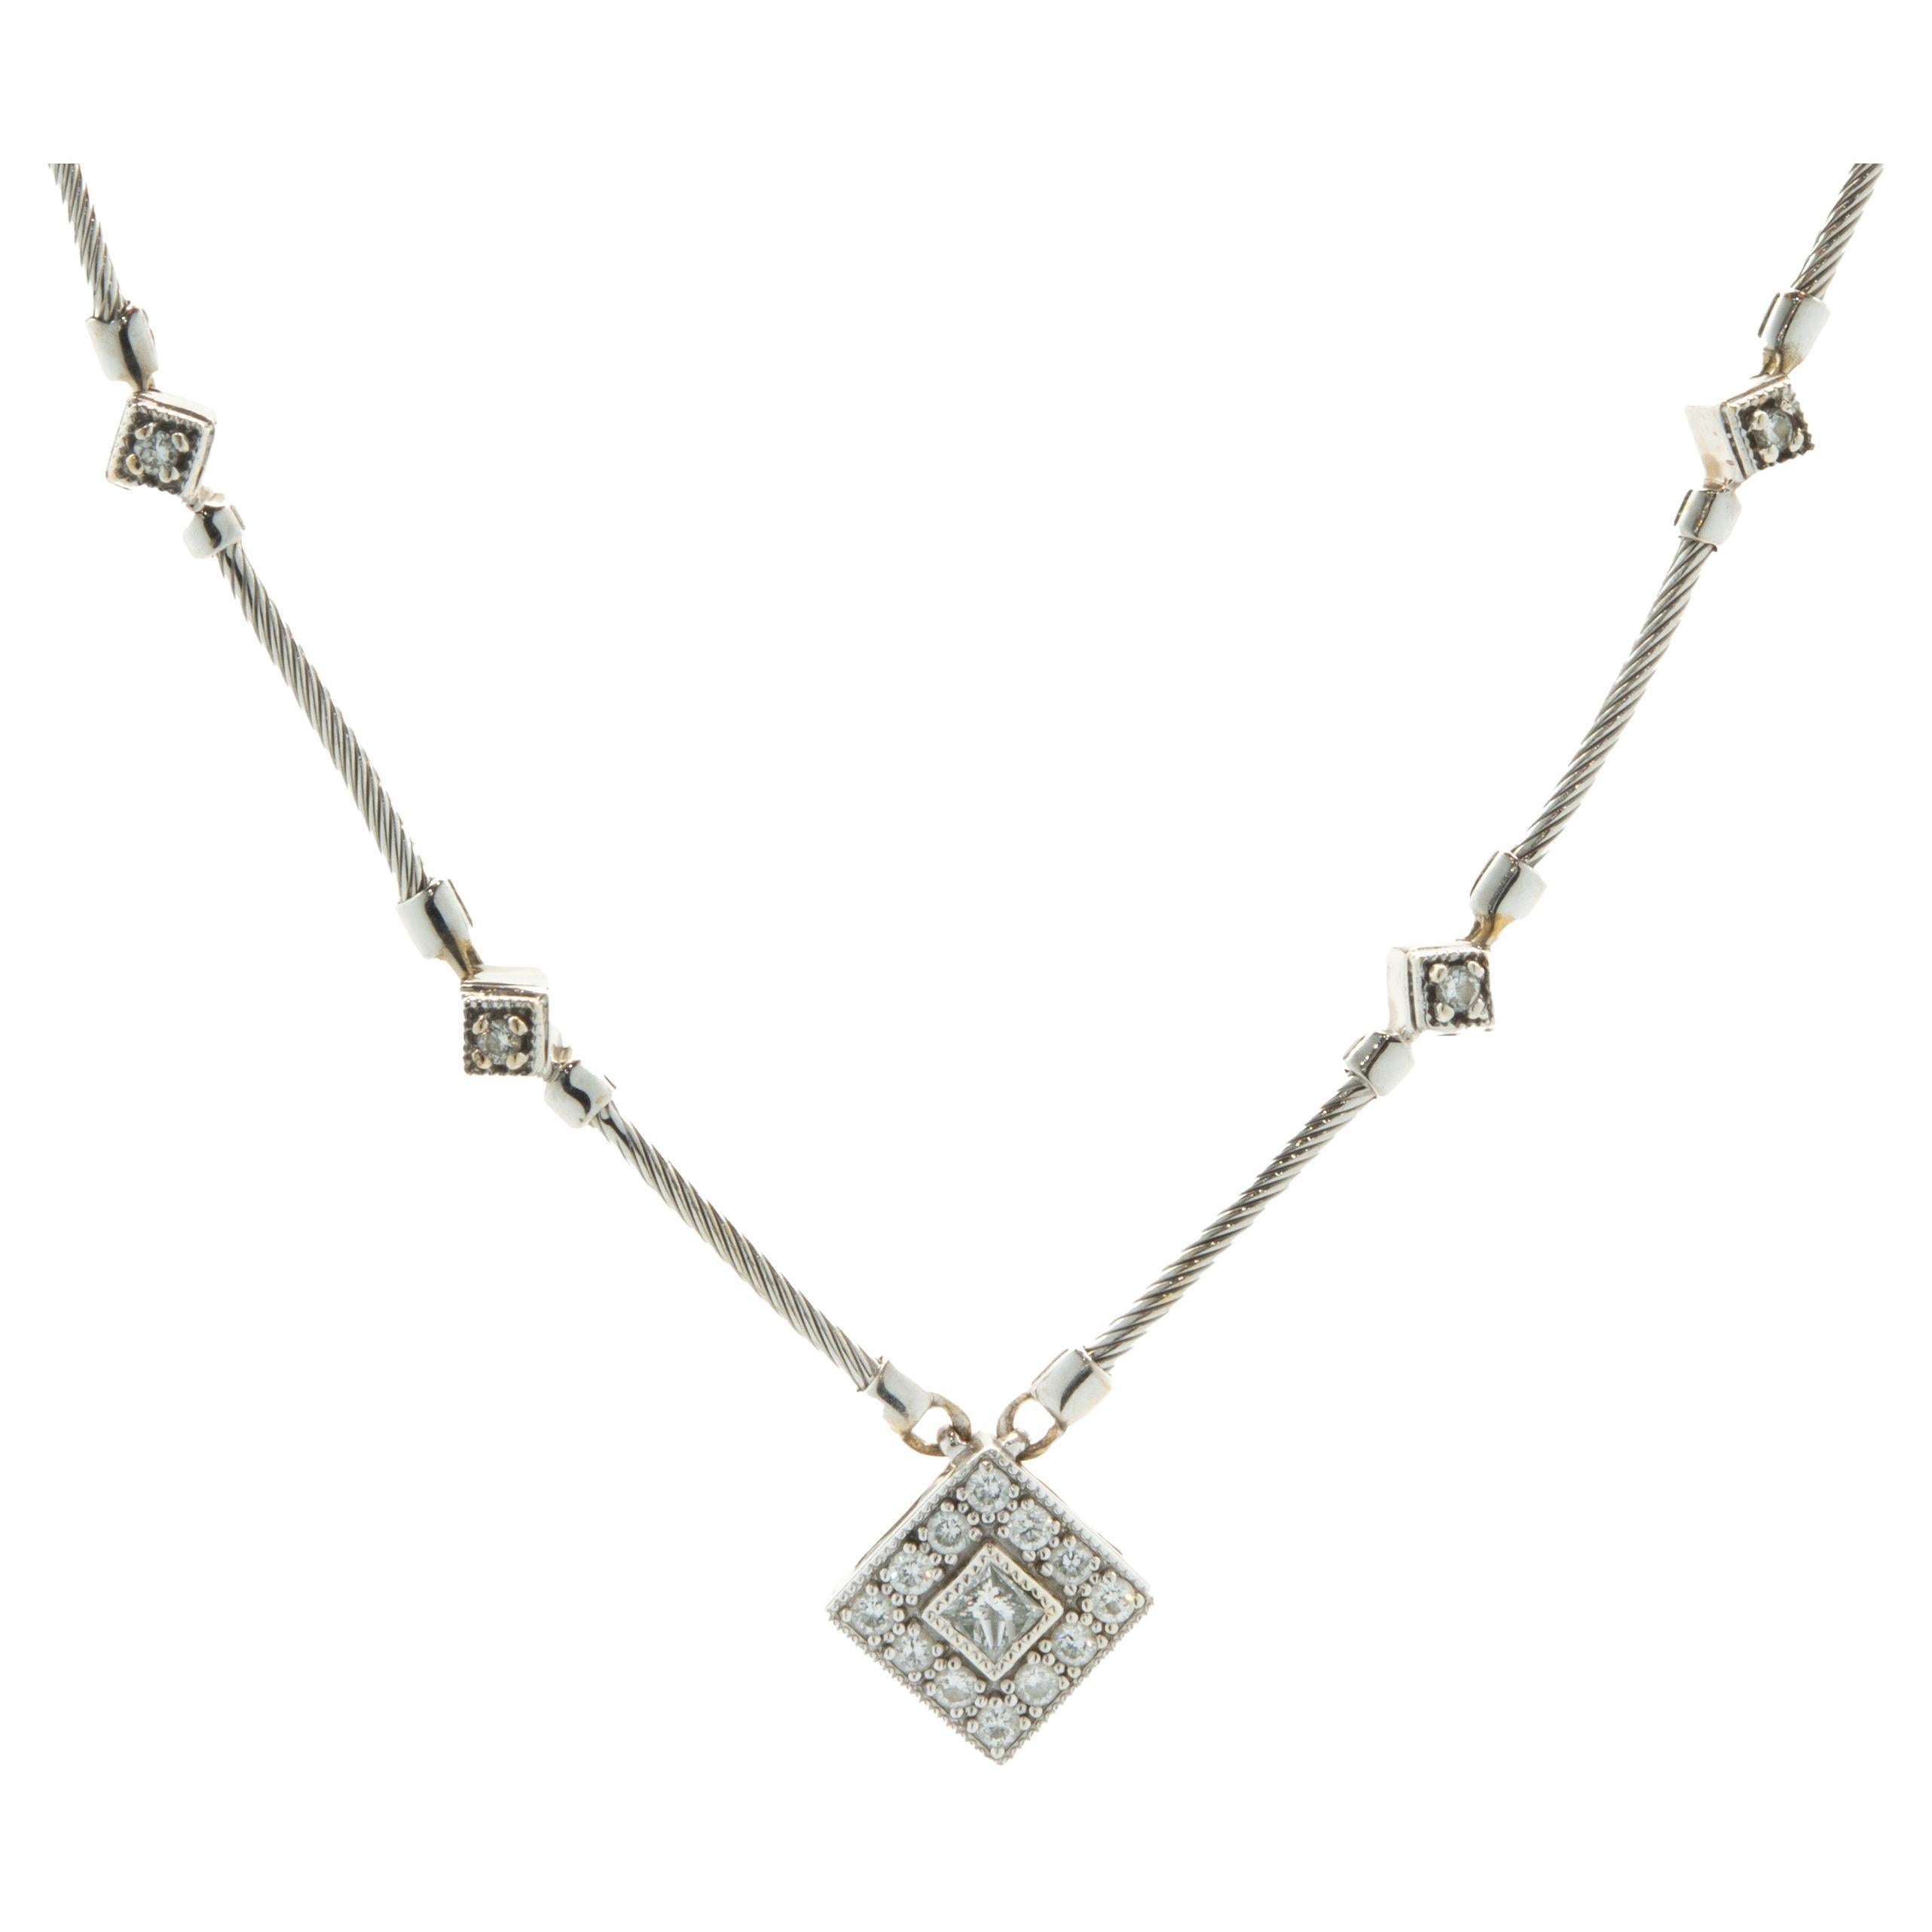 Halskette aus 18 Karat Weißgold mit Diamanten und Bar-Gliederhalsband